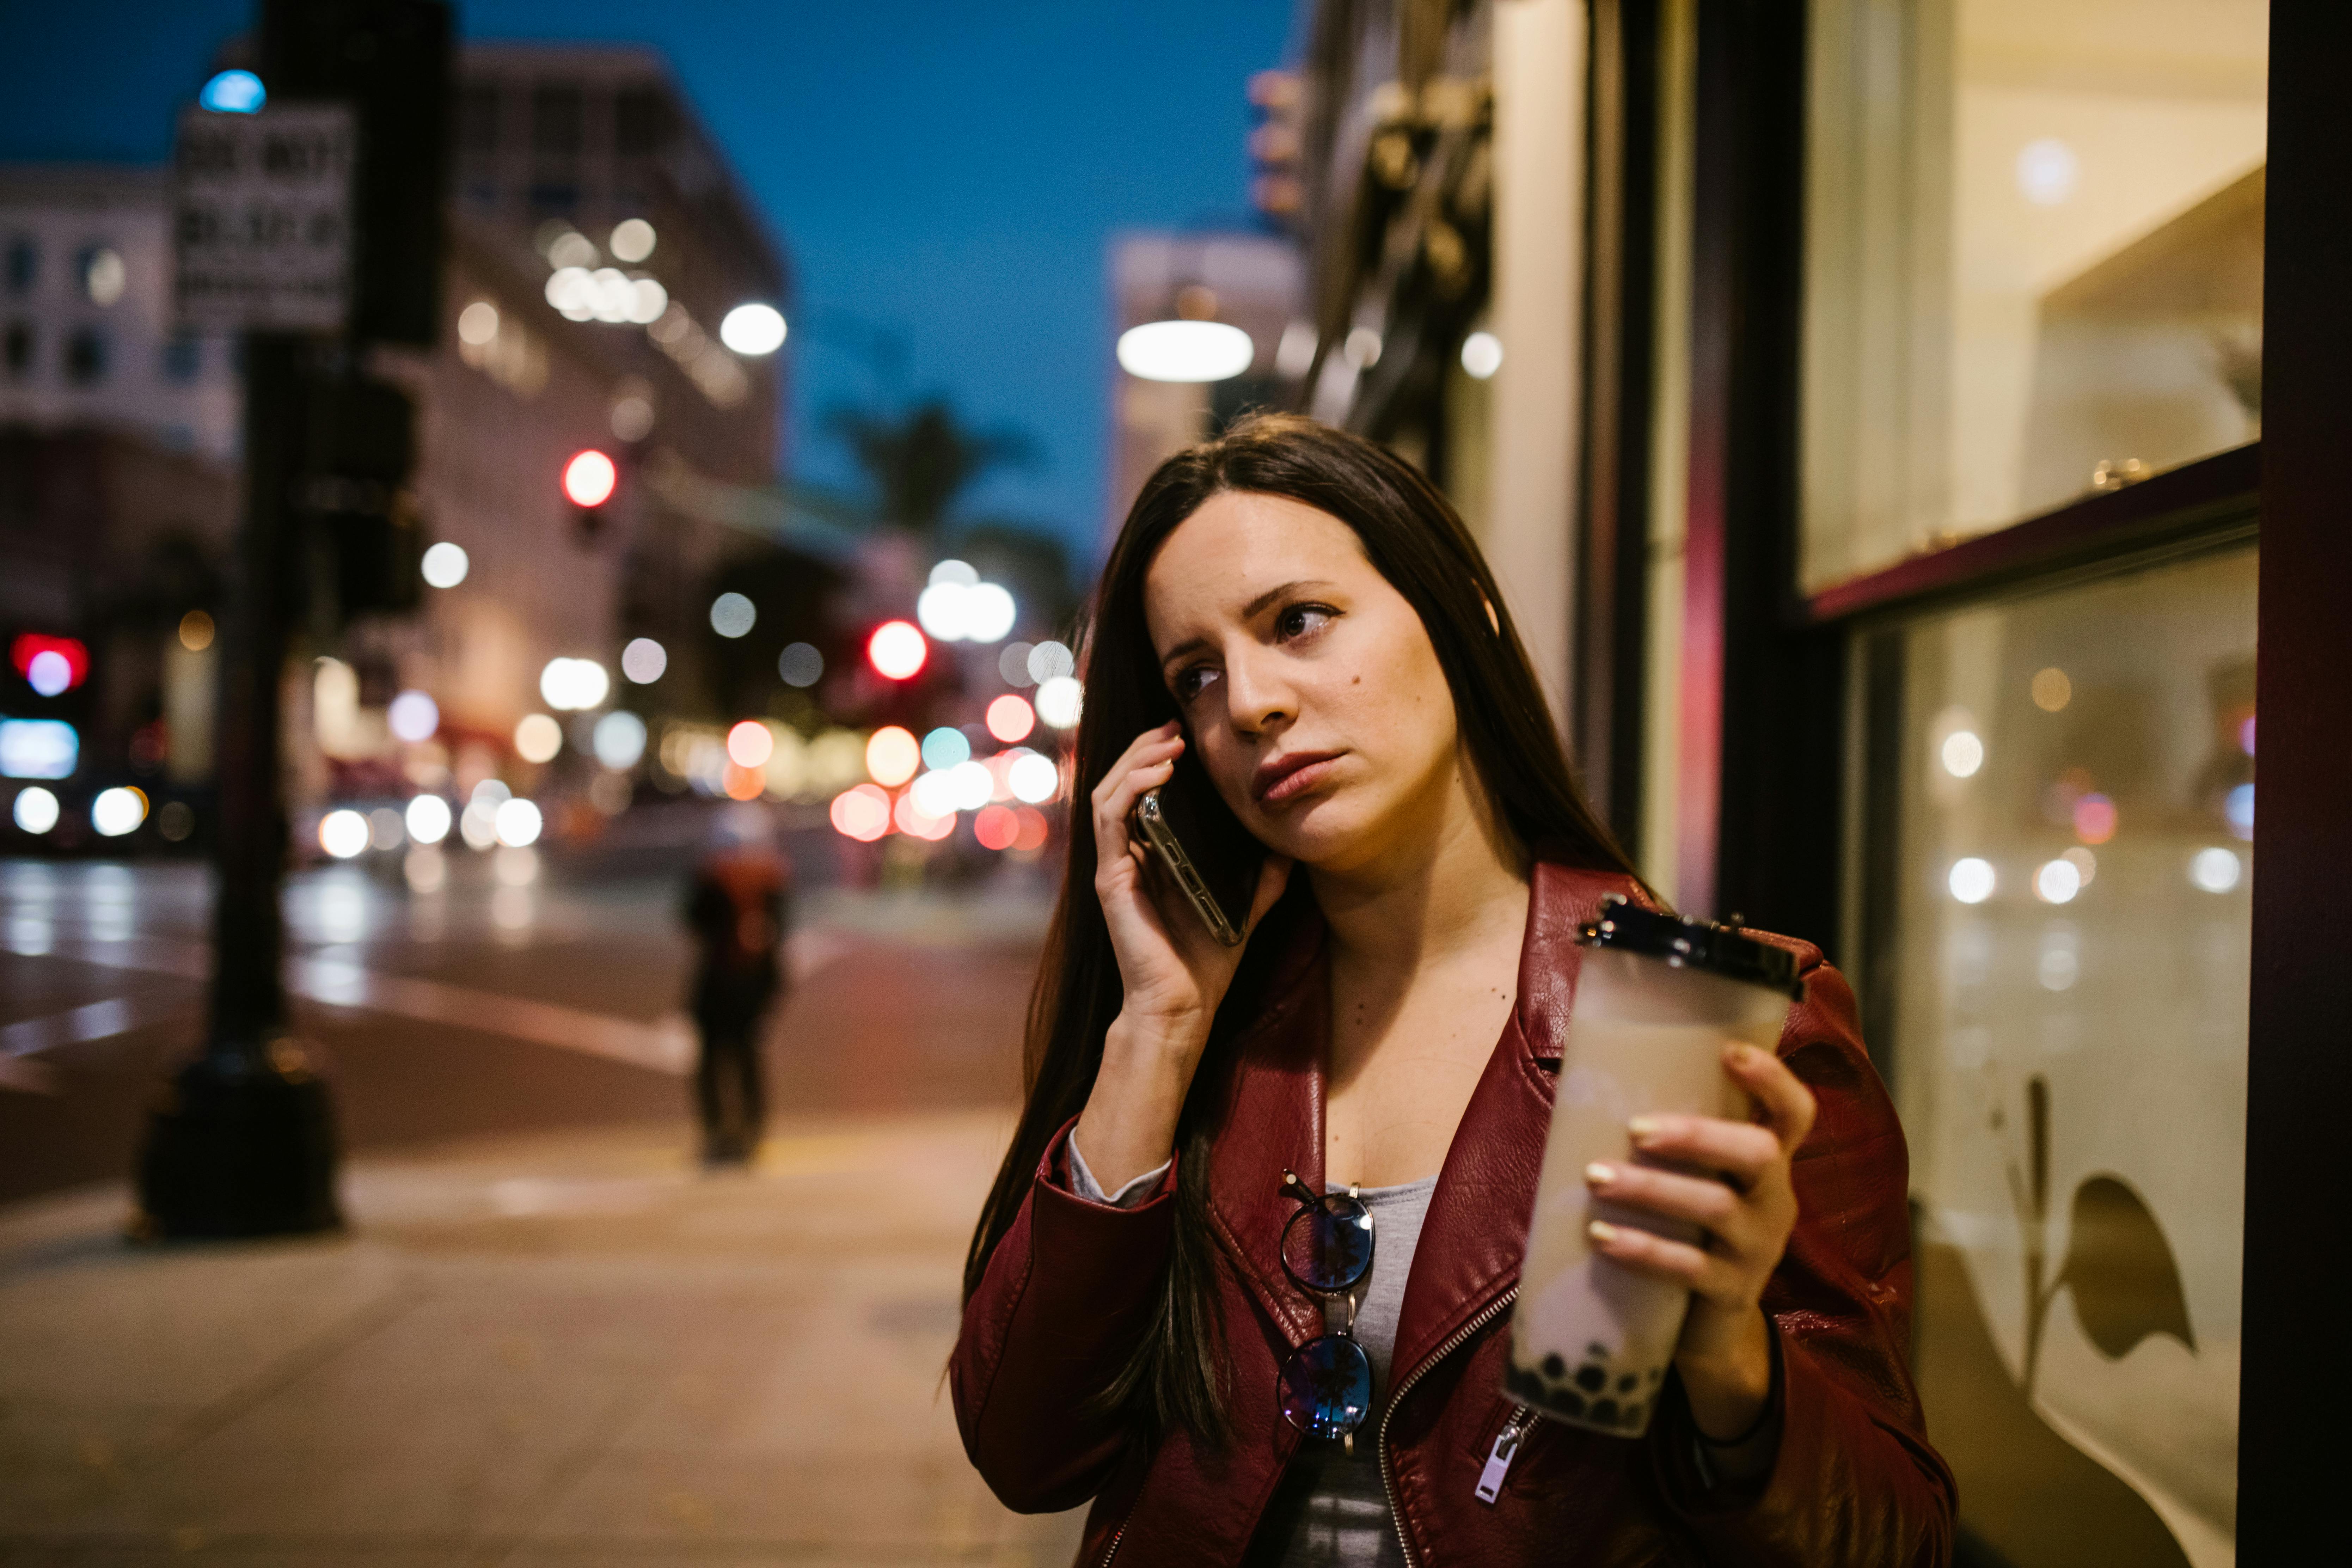 Eine telefonierende Frau auf einem Bürgersteig | Quelle: Pexels